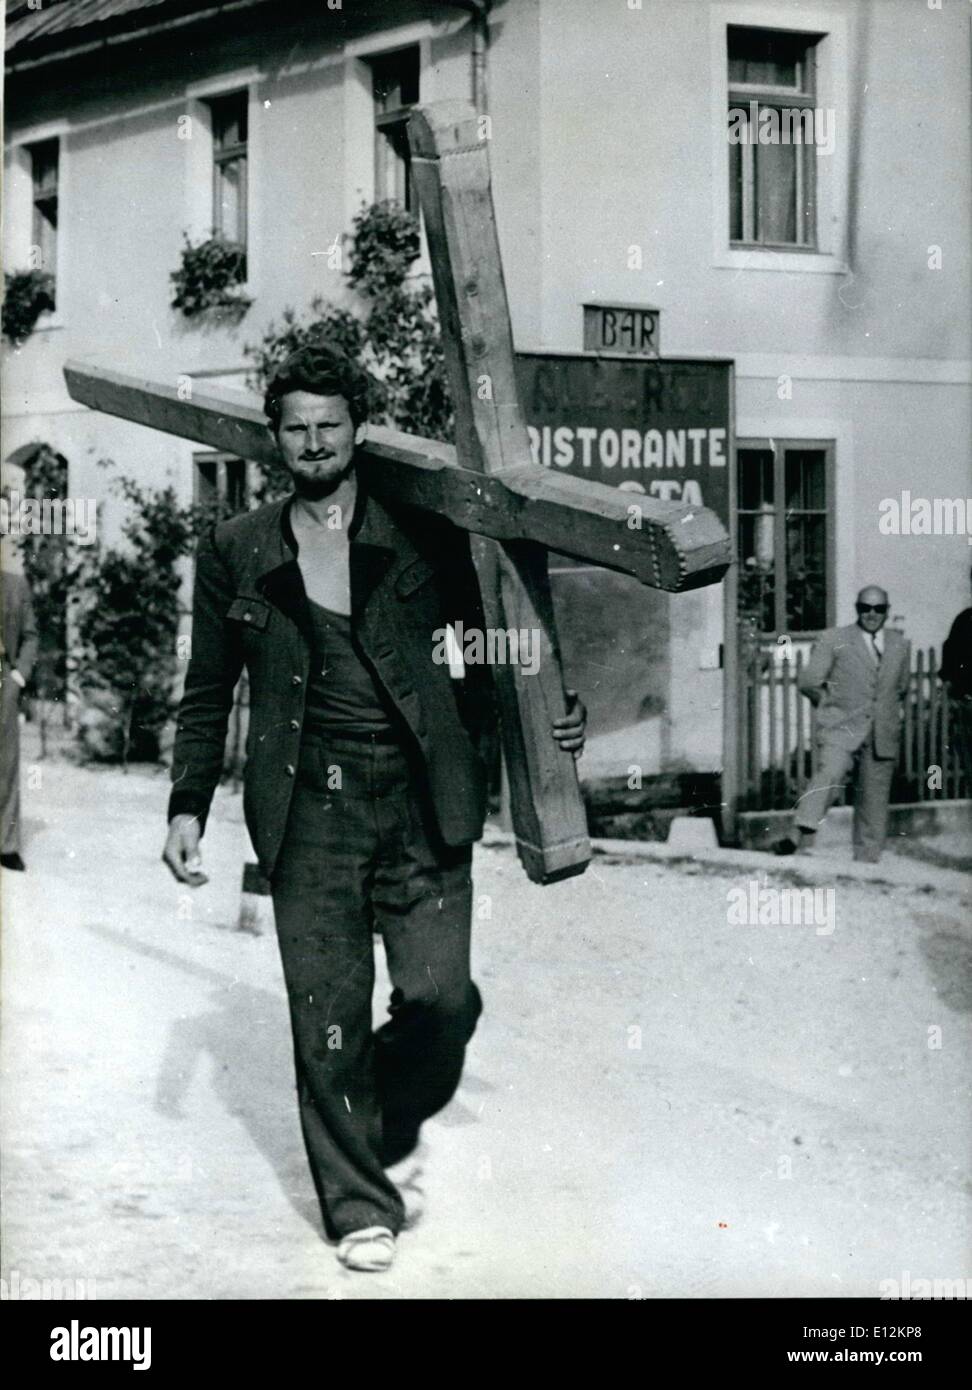 24. Februar 2012 - zu Fuß nach Rom. Josef Wimmer aus Leopoldsdorf/Österreich beabsichtigt, diese selbst geschnitzte Kreuz zu Fuß. Er will nicht über seine Gelübde zu sprechen. Unser Fotograf traf die Pilger auf der anderen Straßenseite im Friaul/Nord-Italien. Keystone Bild München vom 9. Juni 1958 Stockfoto